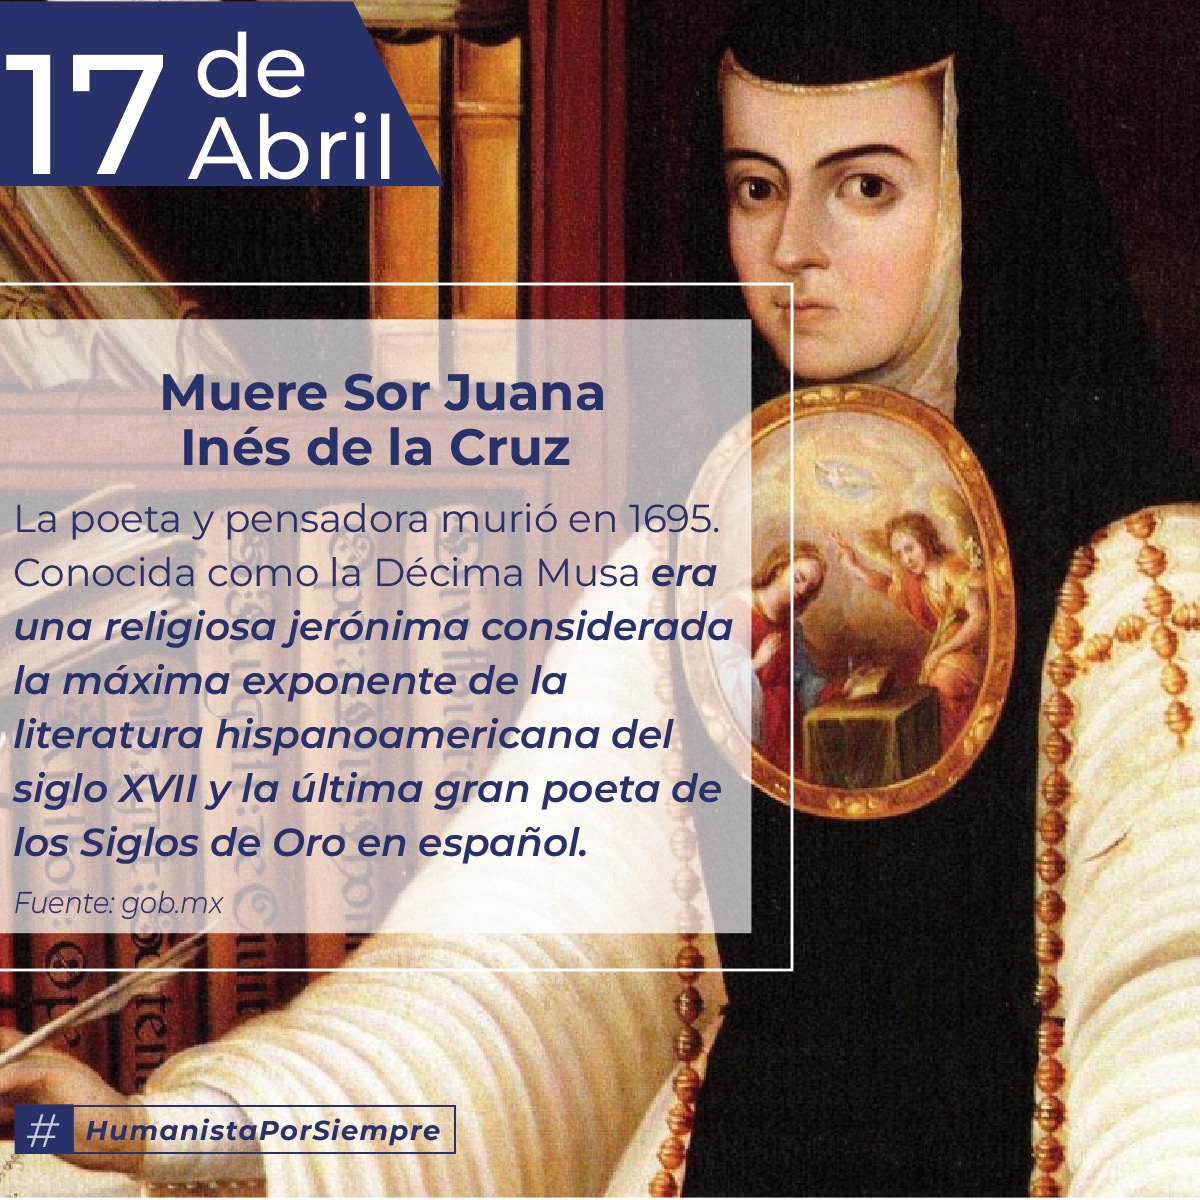 El 17 de abril de 1695 murió Sor Juana Inés de la Cruz, considerada la máxima exponente de la literatura hispanoamericana del siglo XVII y la última gran poeta de los siglos de oro en español. #HumanistaPorSiempre #UMSNH